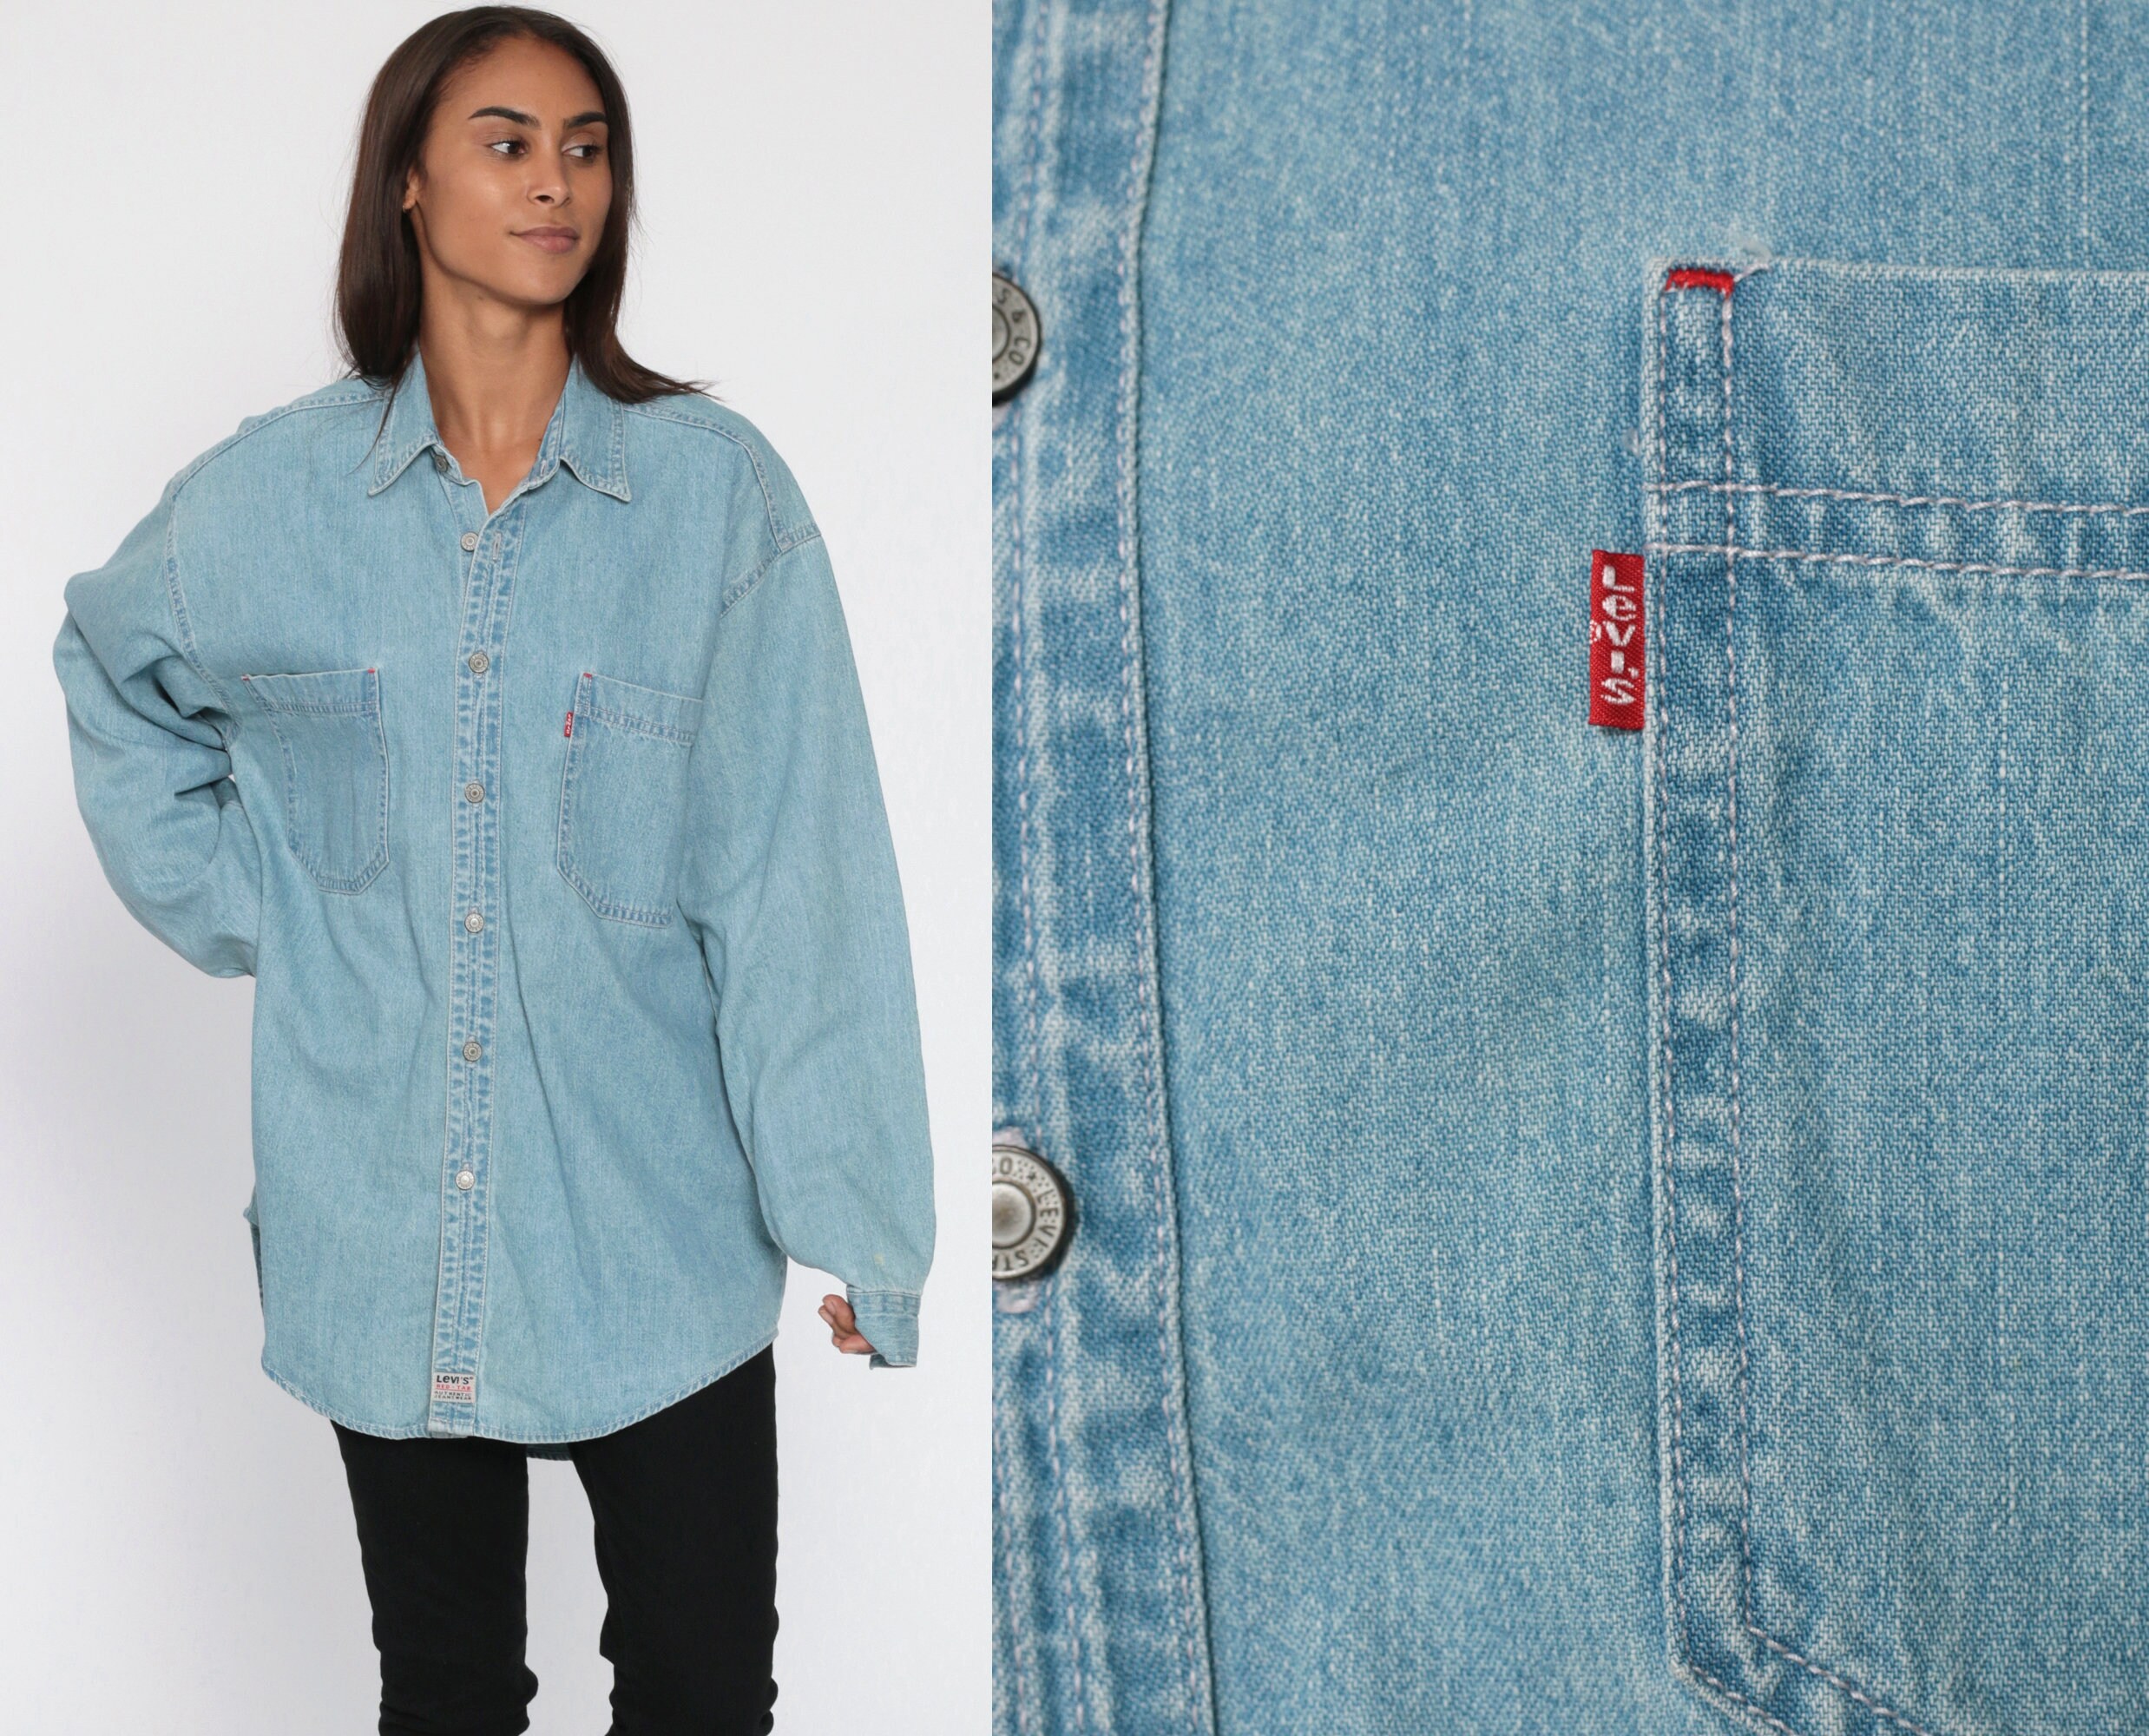 Levis Denim Shirt 90s Light Blue Button Up Shirt Jean Shirt Grunge  Streetwear Long Sleeve Cotton Oversized Button Down Medium Large